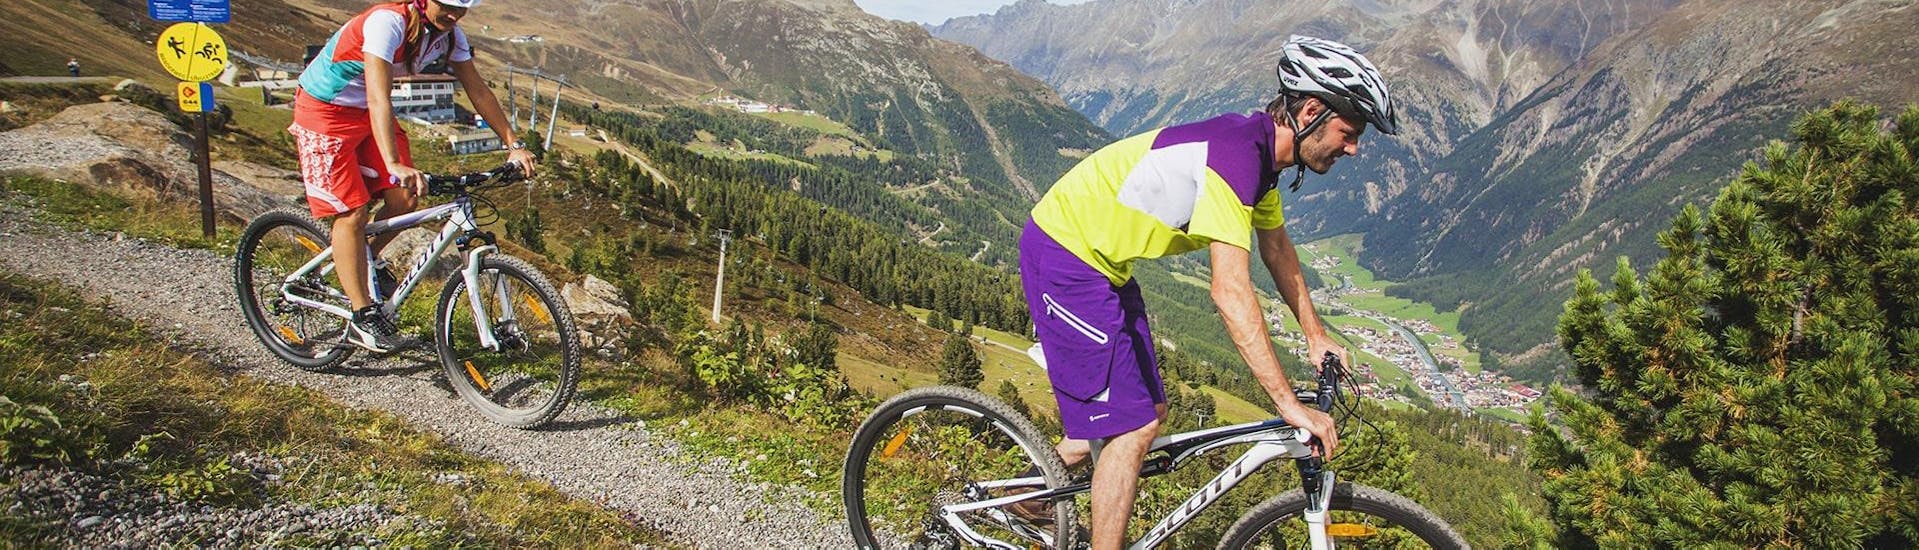 Zwei Männer fahren mit ihren Fahrrädern, die sie beim Radverleih Skischule & Bikeverleih AGE Ötz-Hochötz im Ötztal ausgeliehen haben, einen Bergweg entlang.